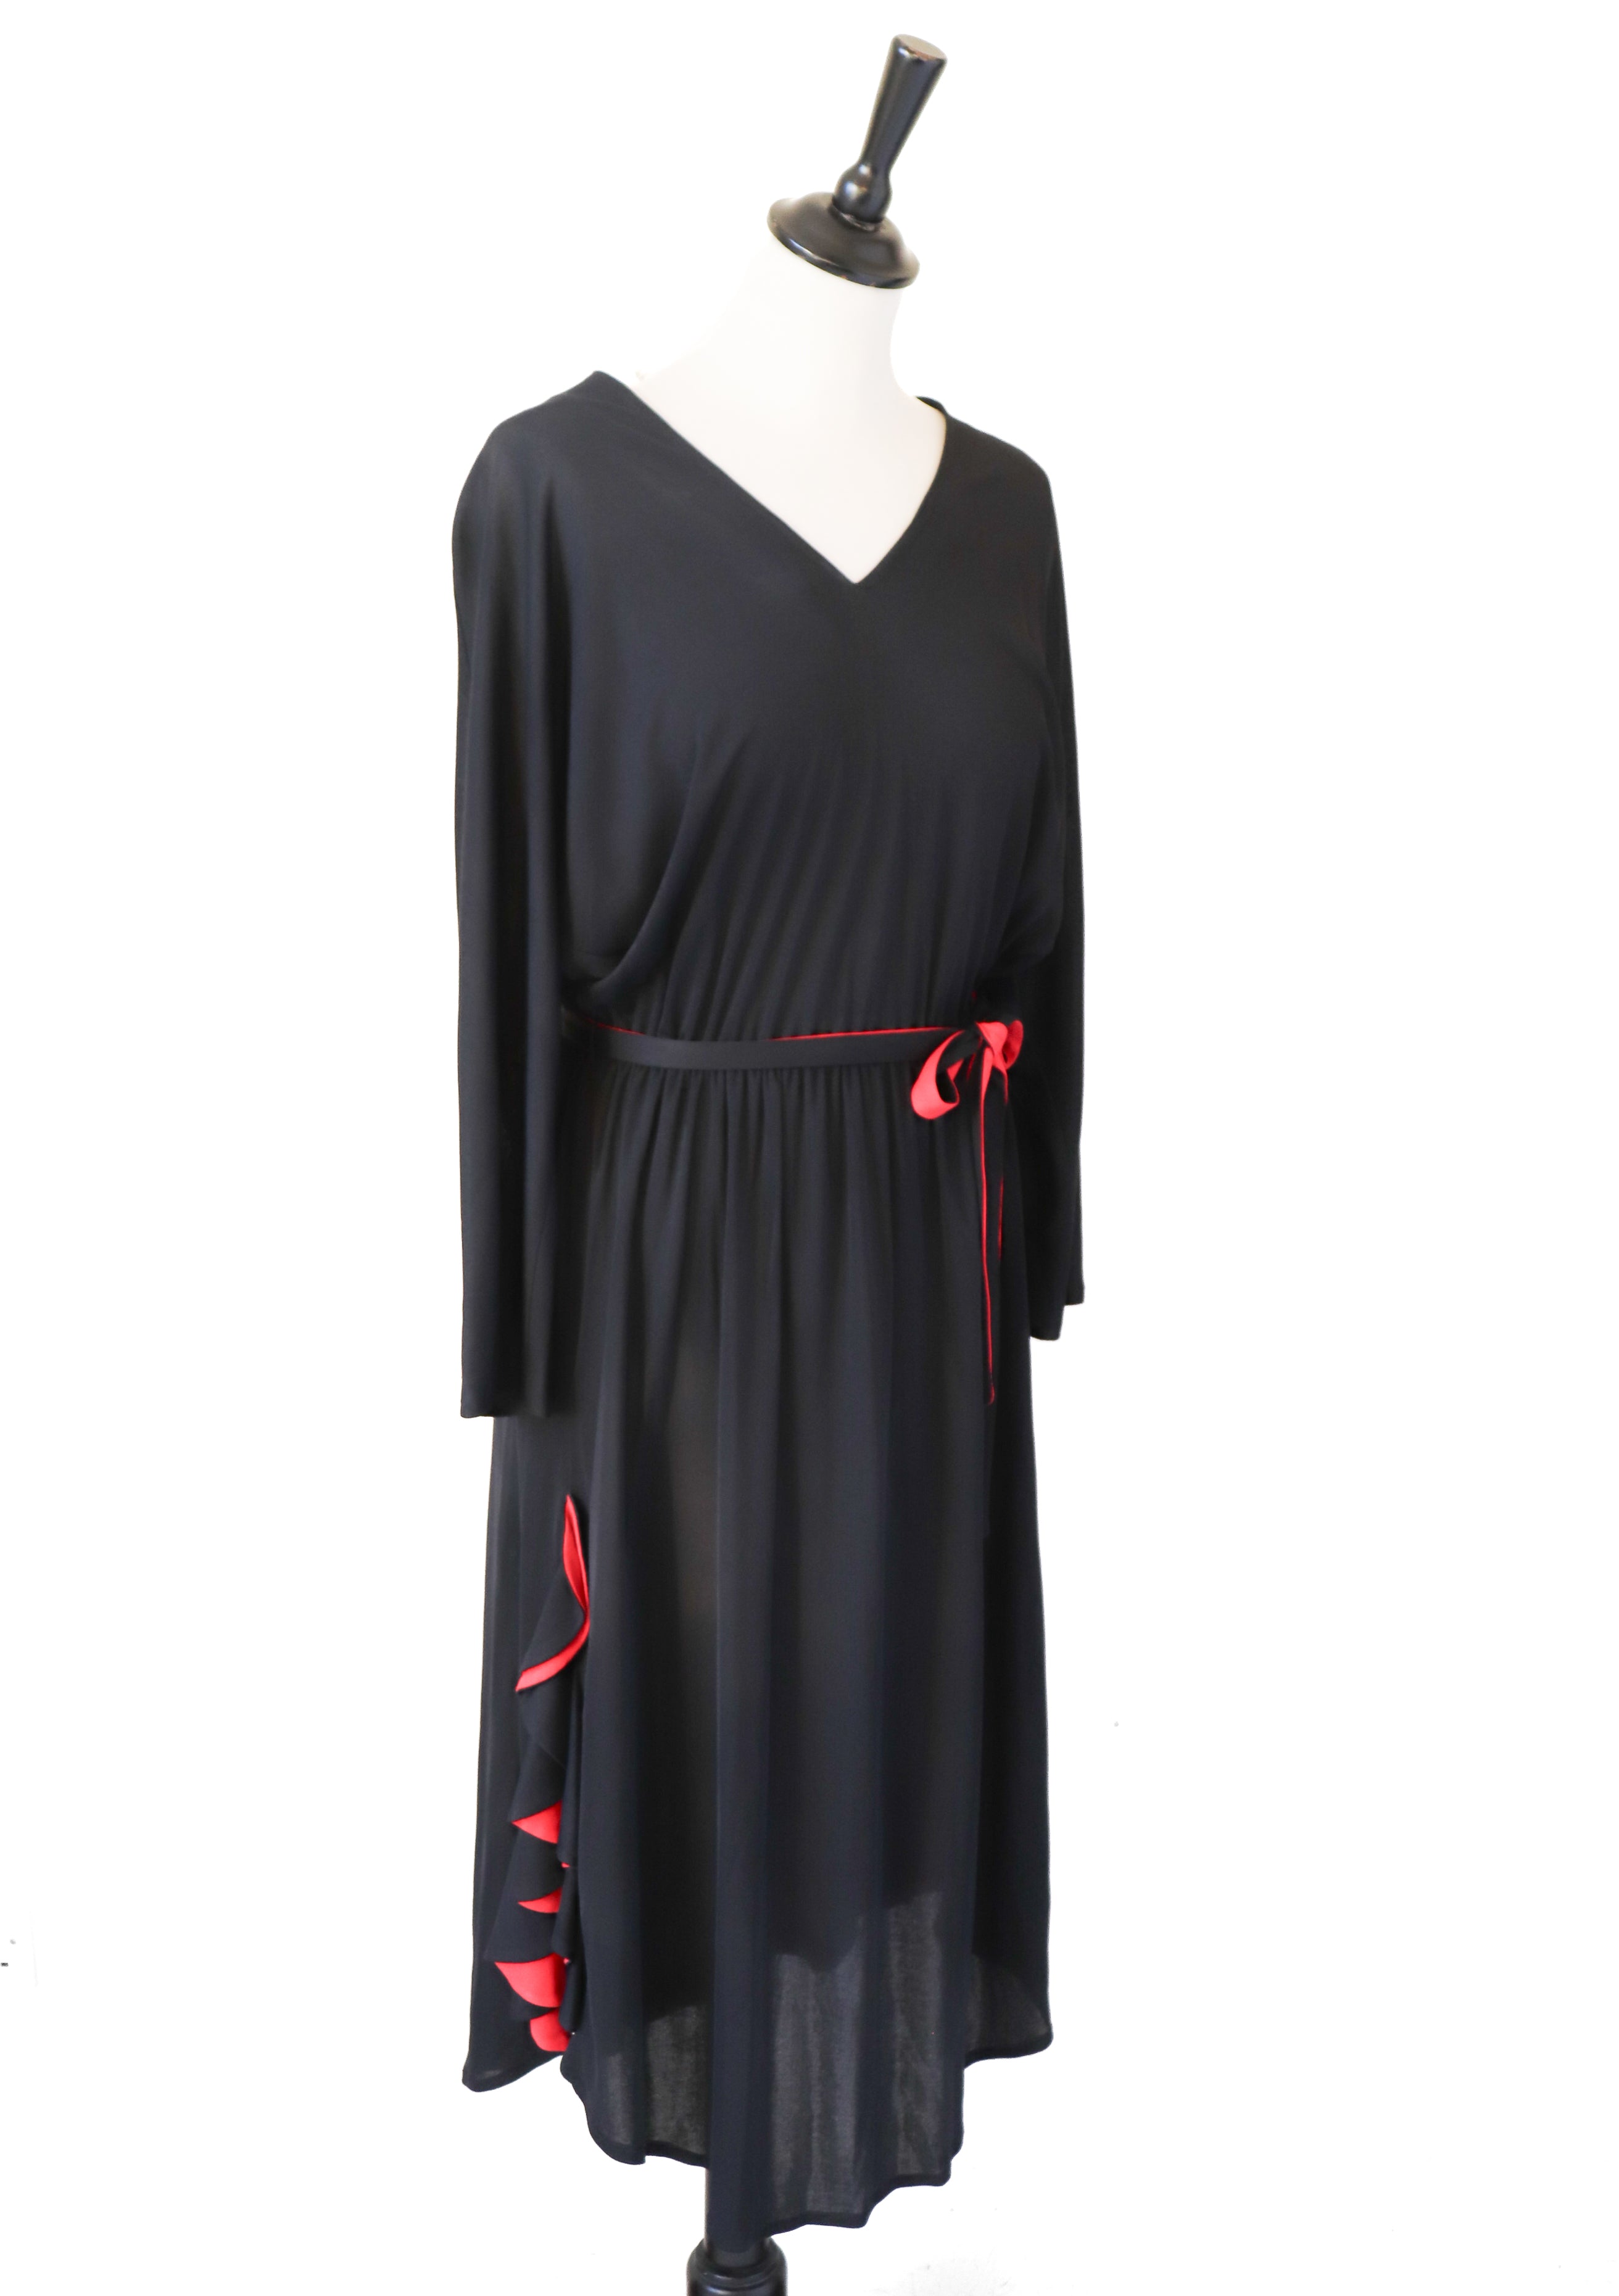 Radley Black / Red Dress - Vintage 1970s - Polyester - Fit M / UK 12